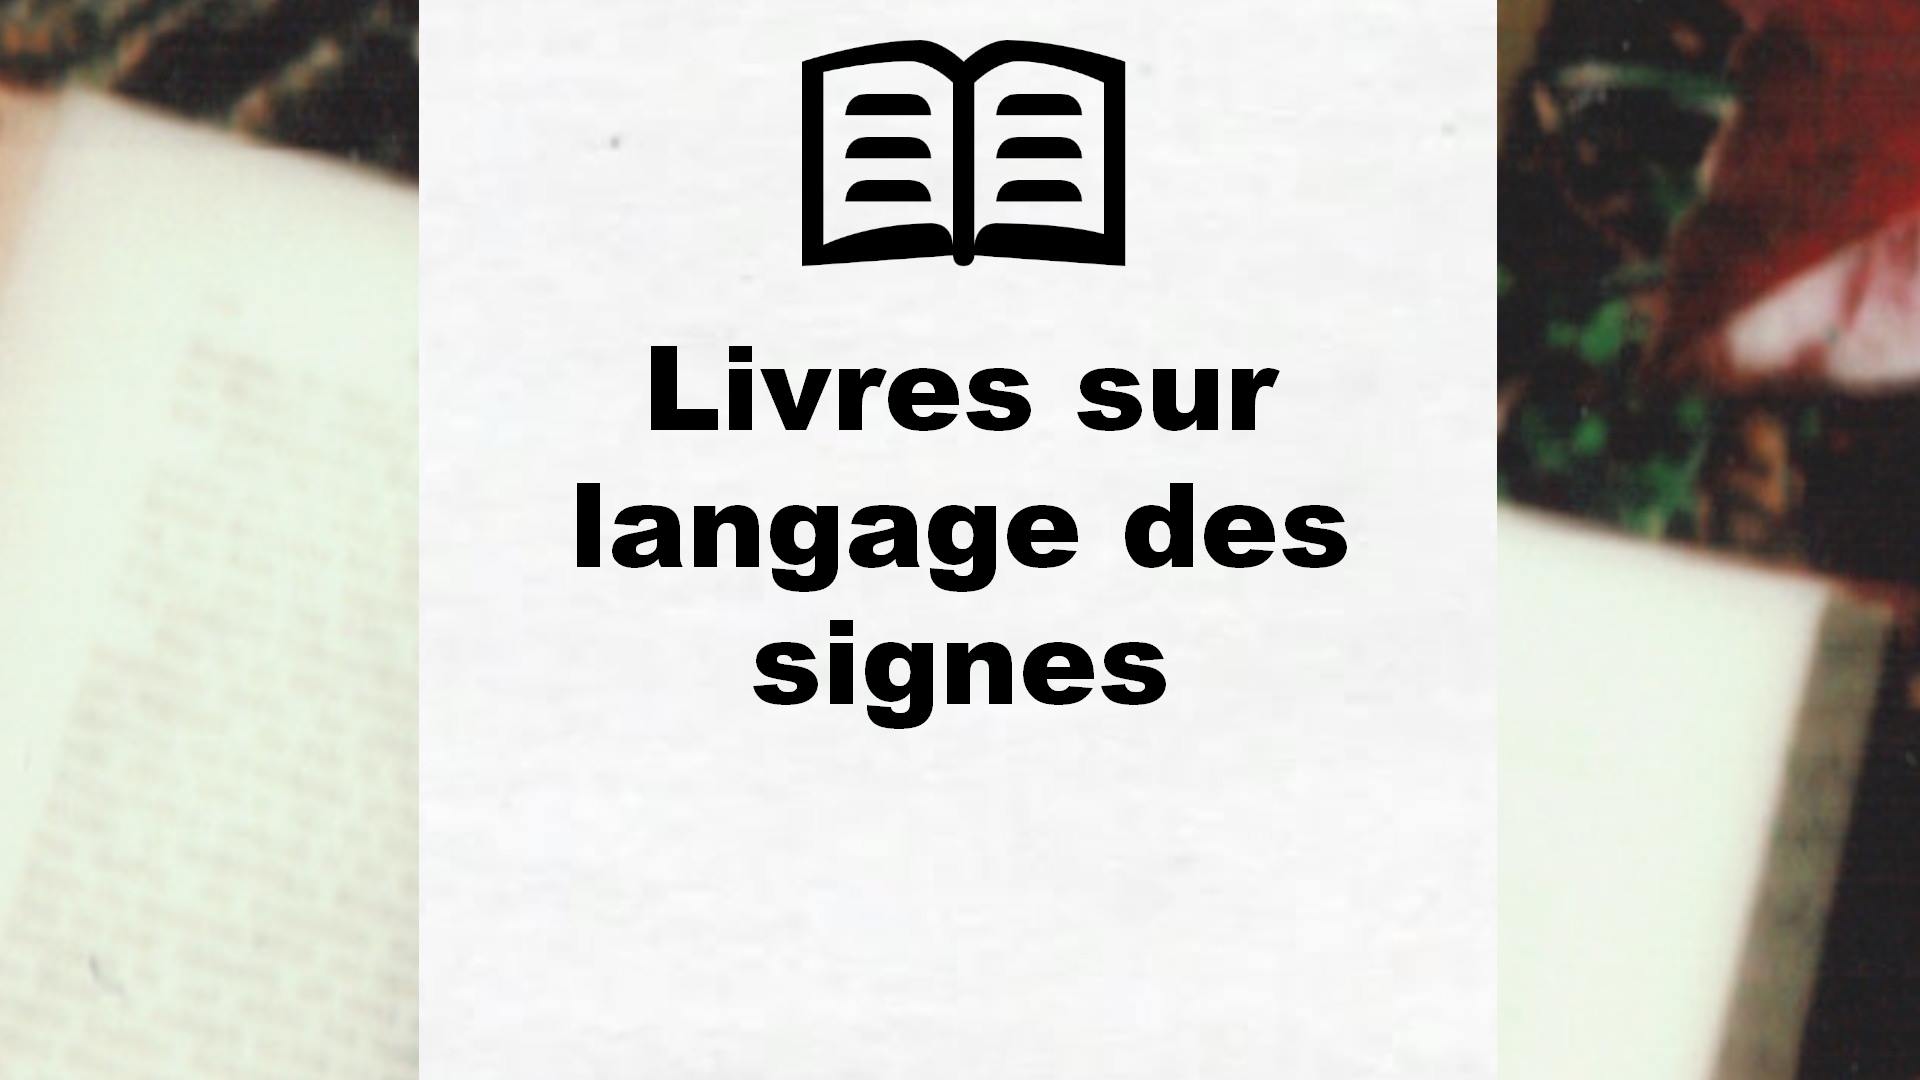 Livres sur langage des signes